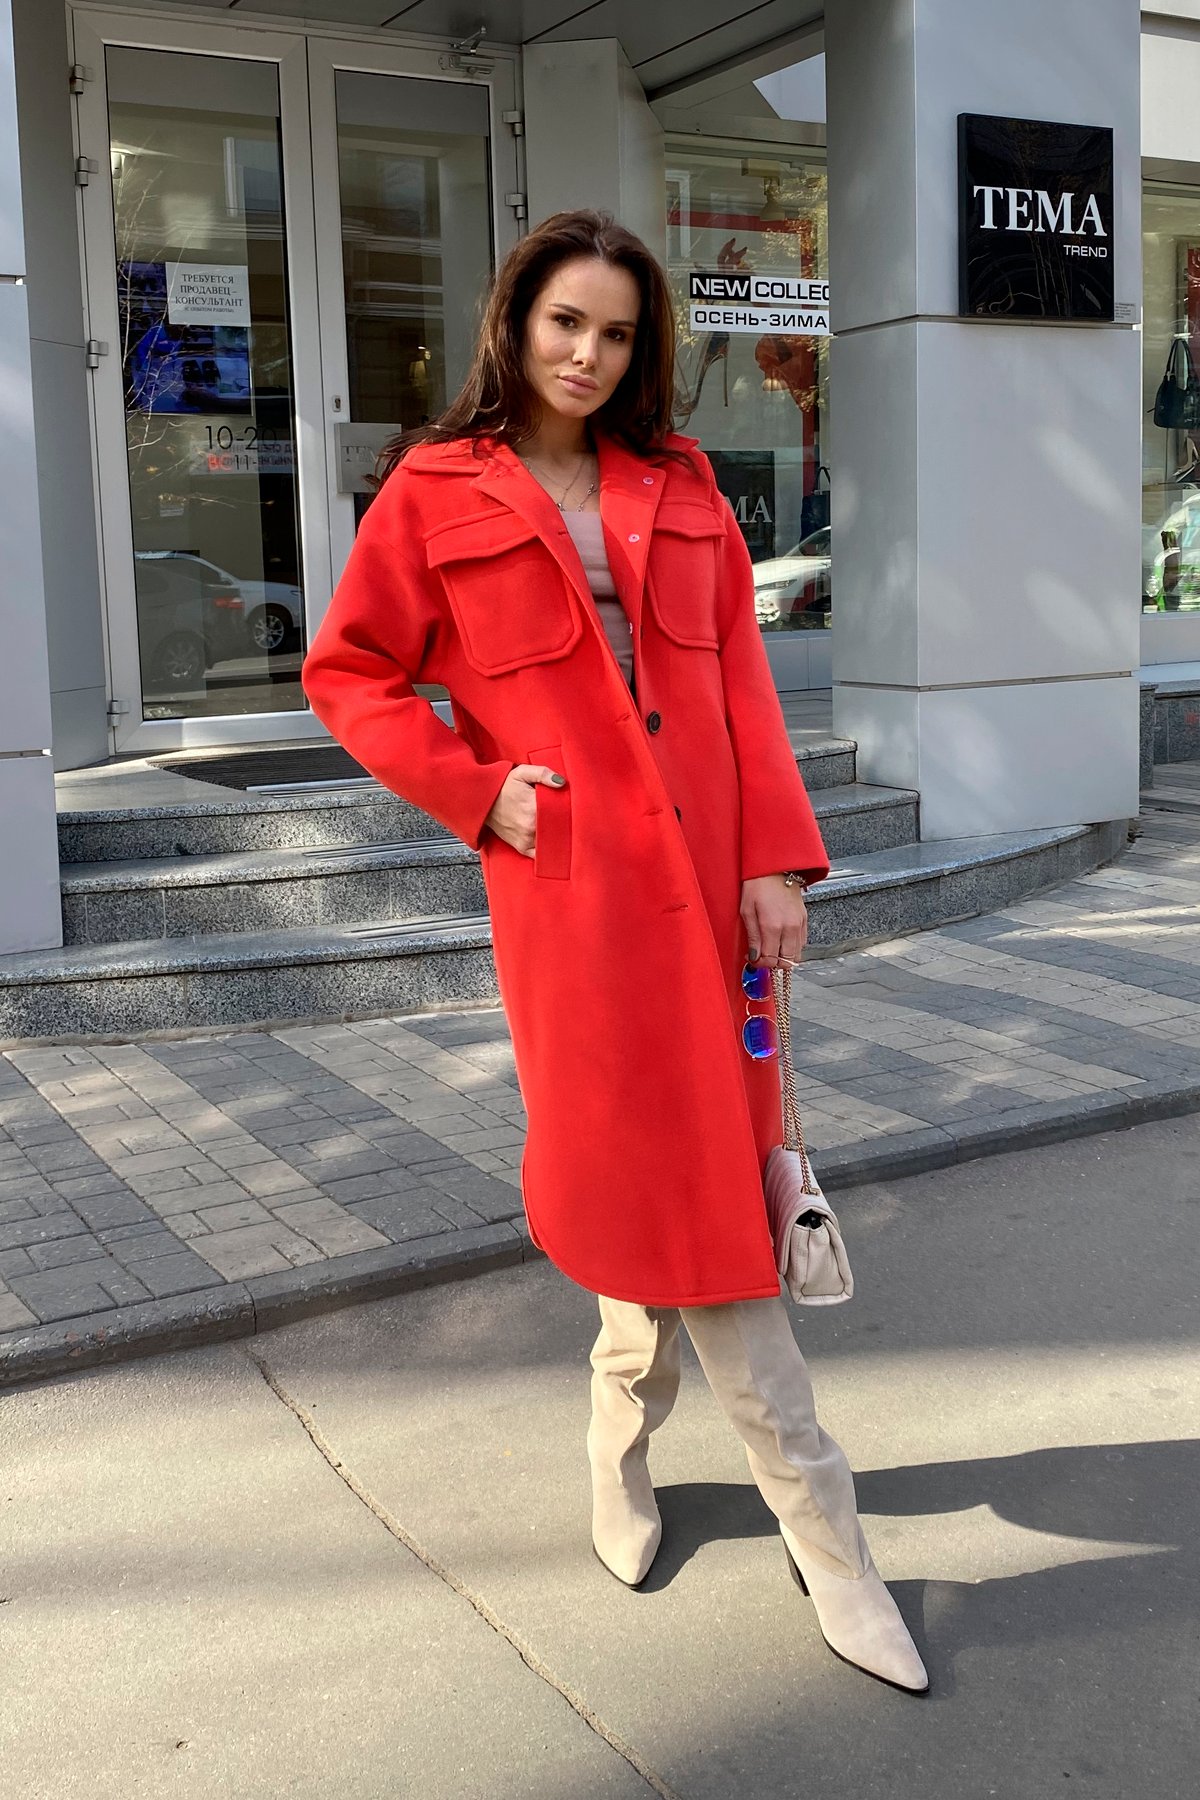 Ола зимнее пальто из гладкого кашемира 9987 АРТ. 46284 Цвет: Красный - фото 1, интернет магазин tm-modus.ru